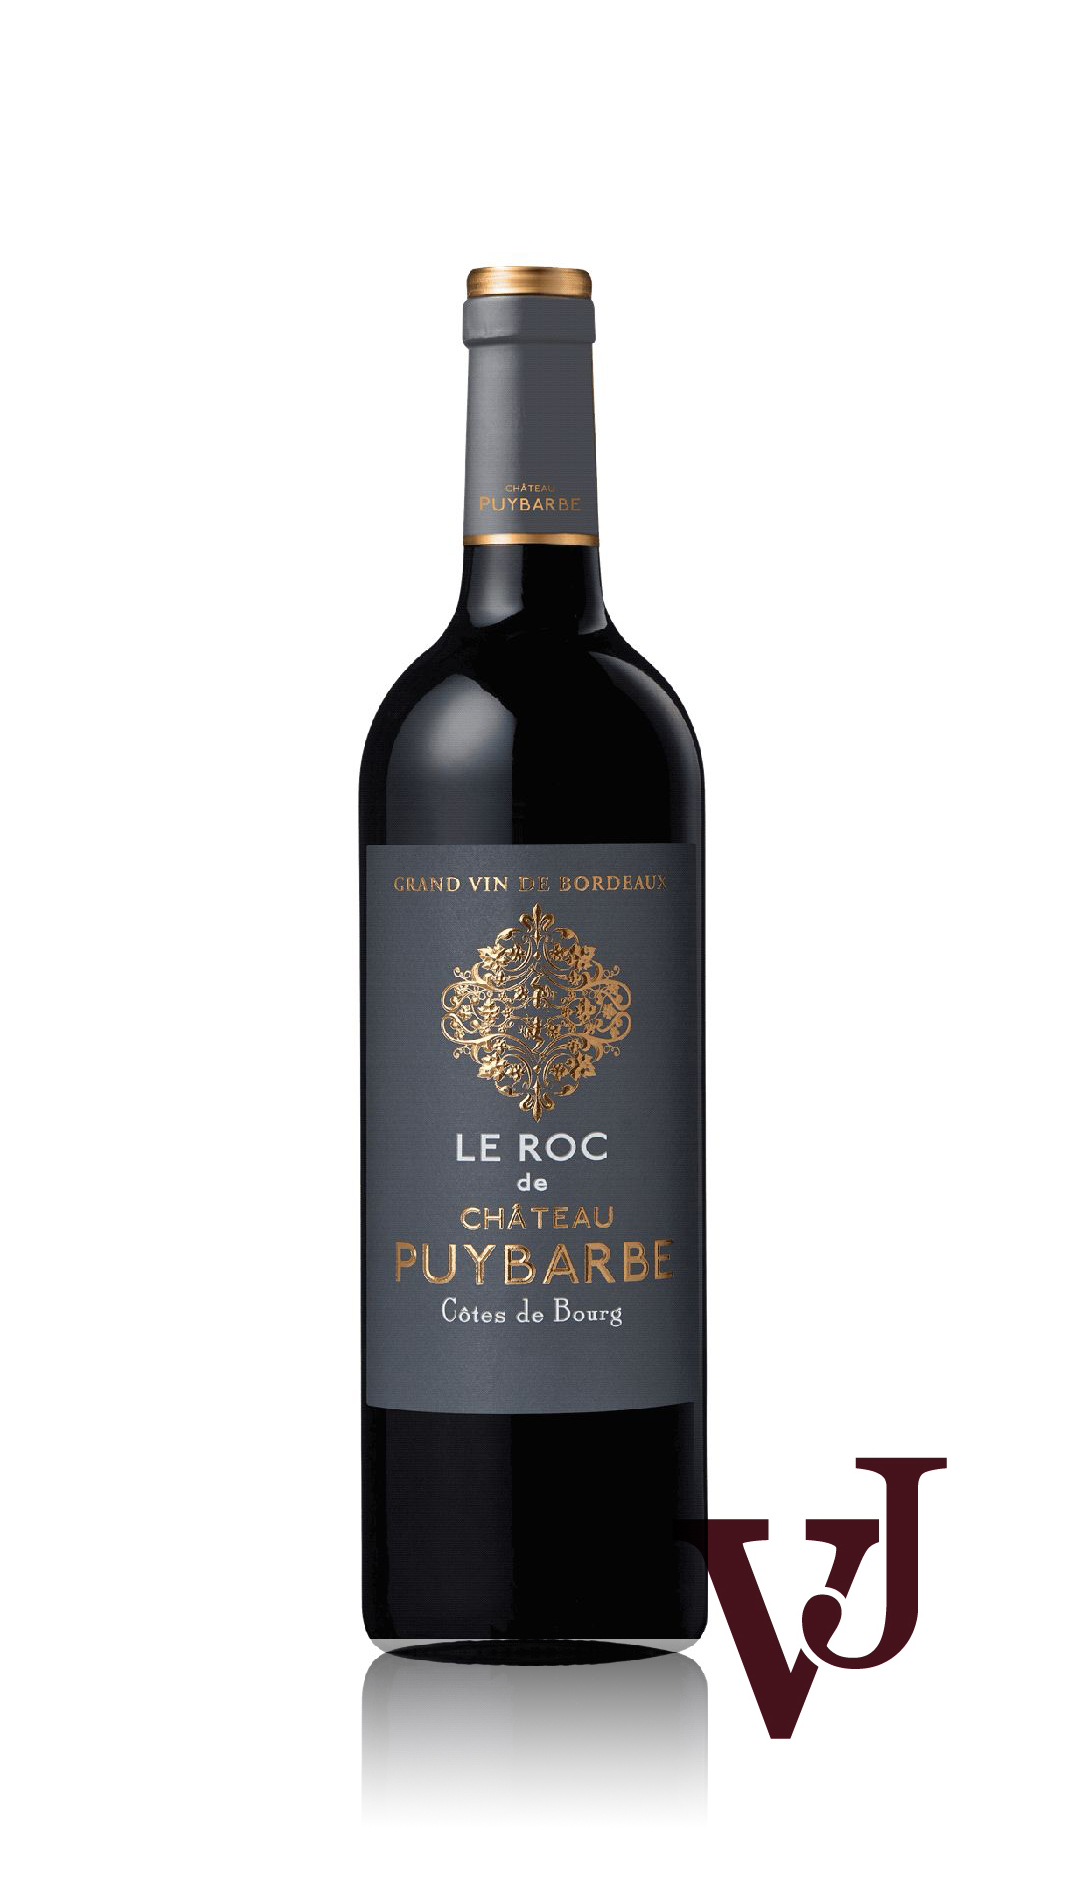 Rött Vin - Le Roc de Chateau Puybarbe artikel nummer 5012301 från producenten Chateau Puybarbe SAS från området Frankrike